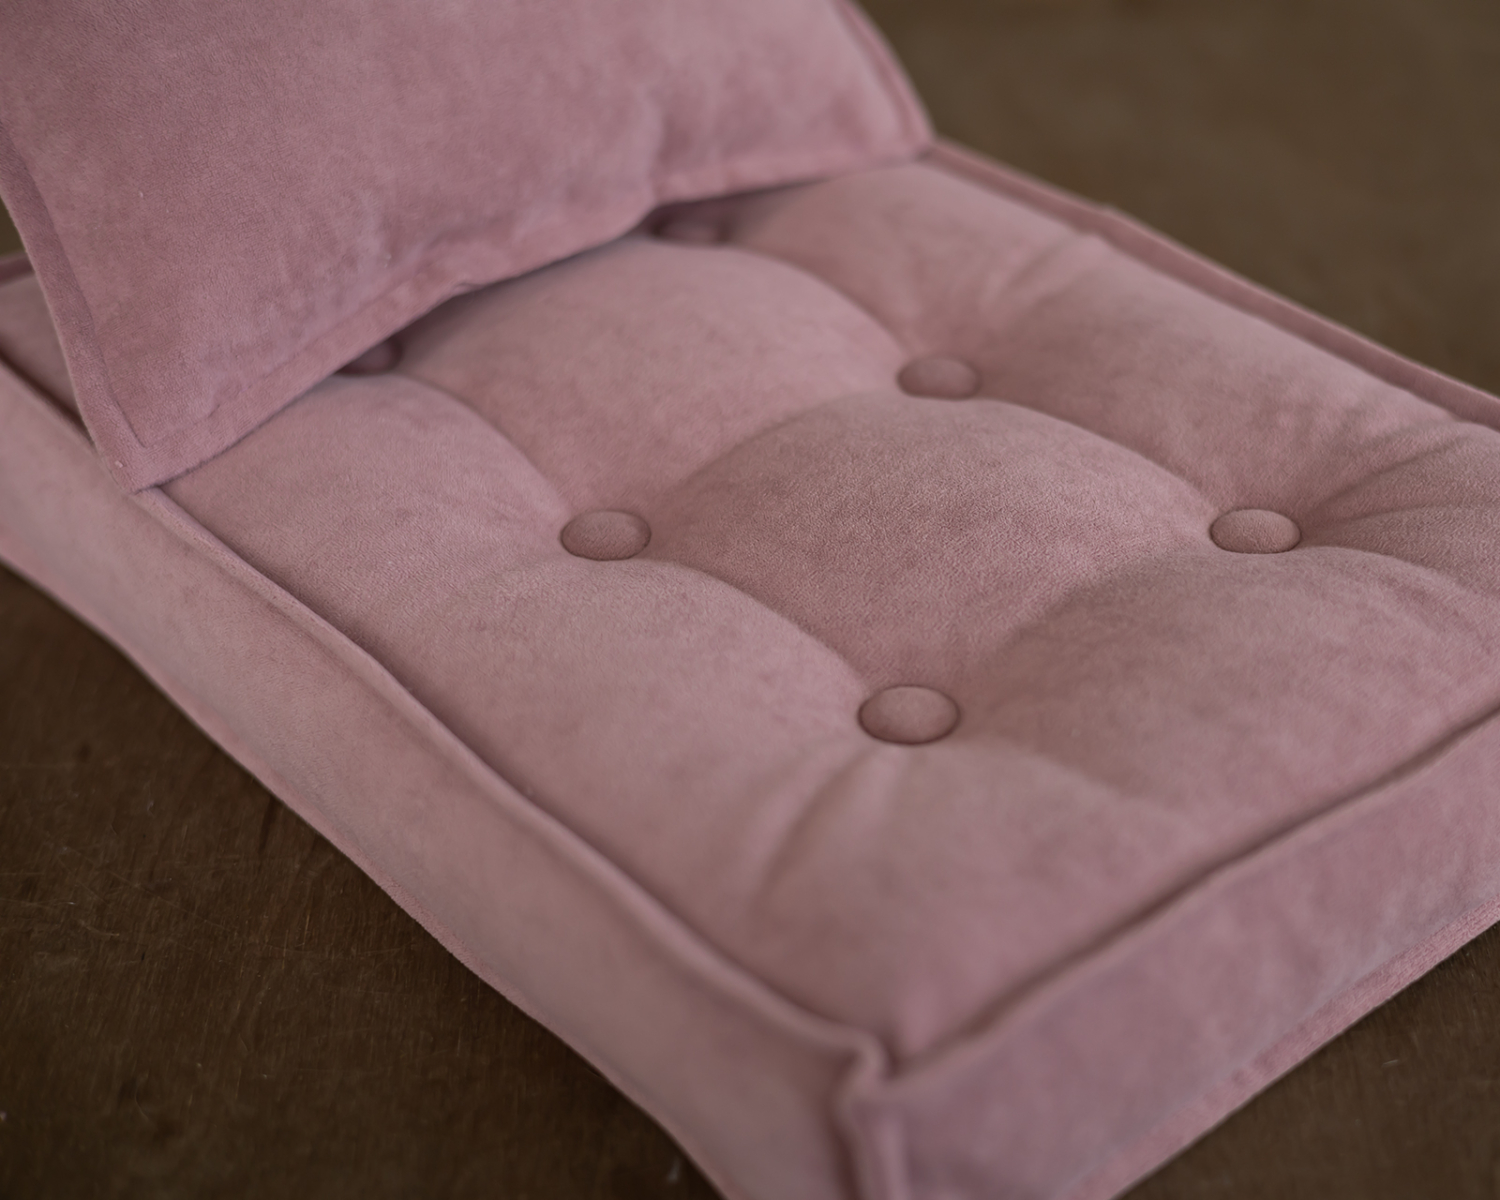 Antique pink mattress + posing pillow + headband in set